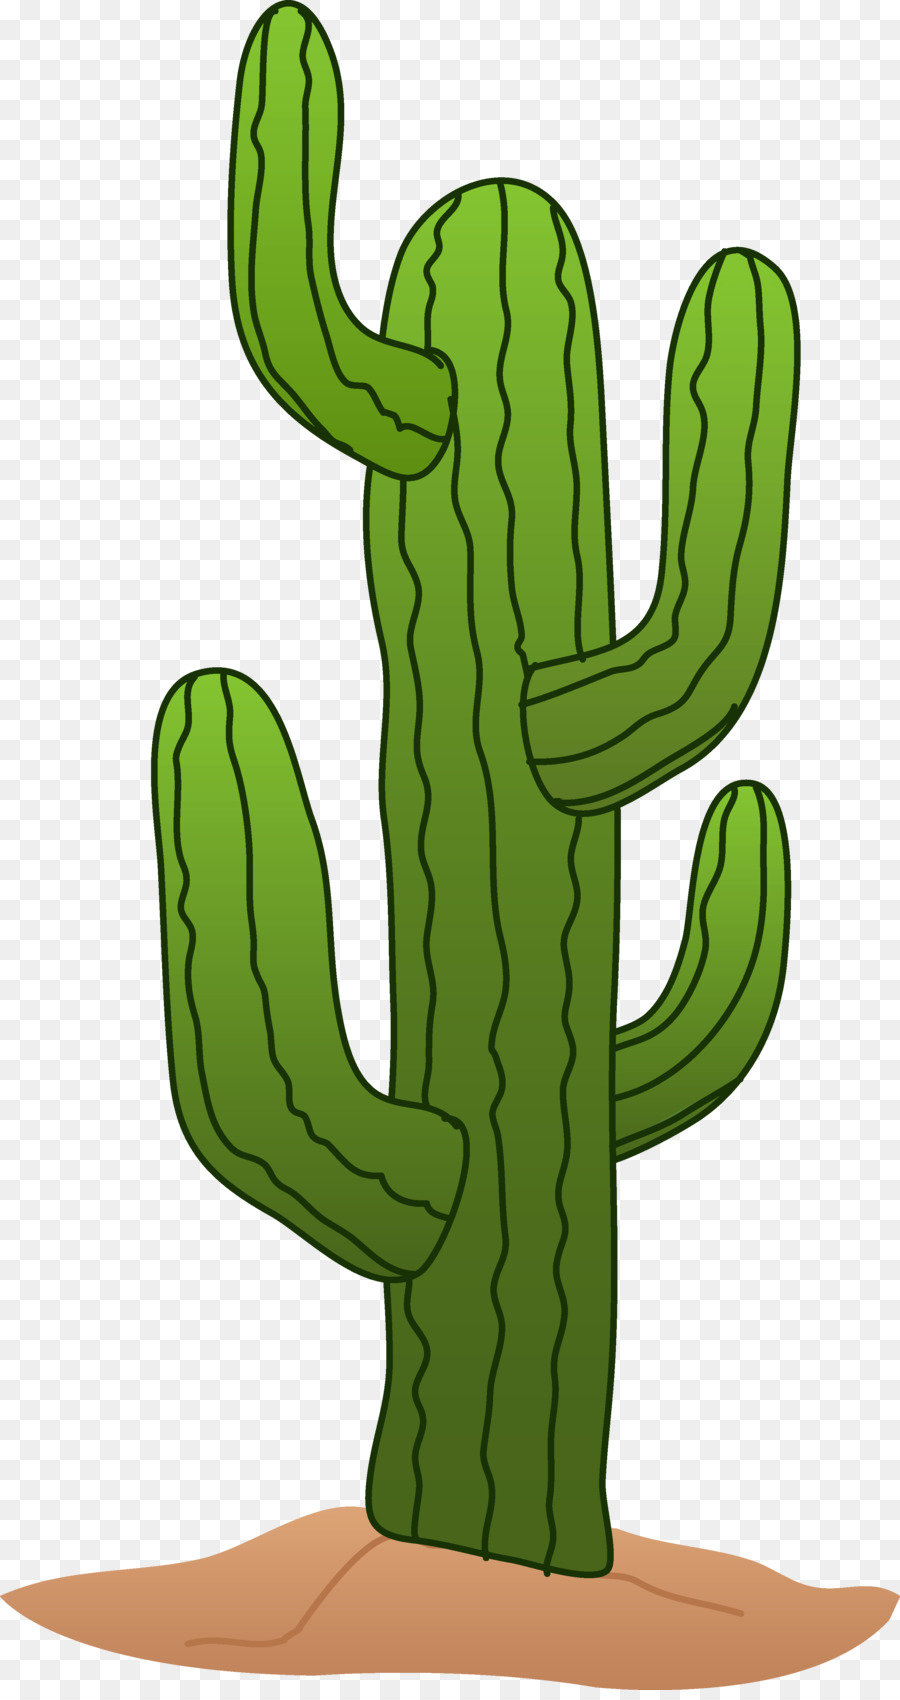 cactus clipart tree